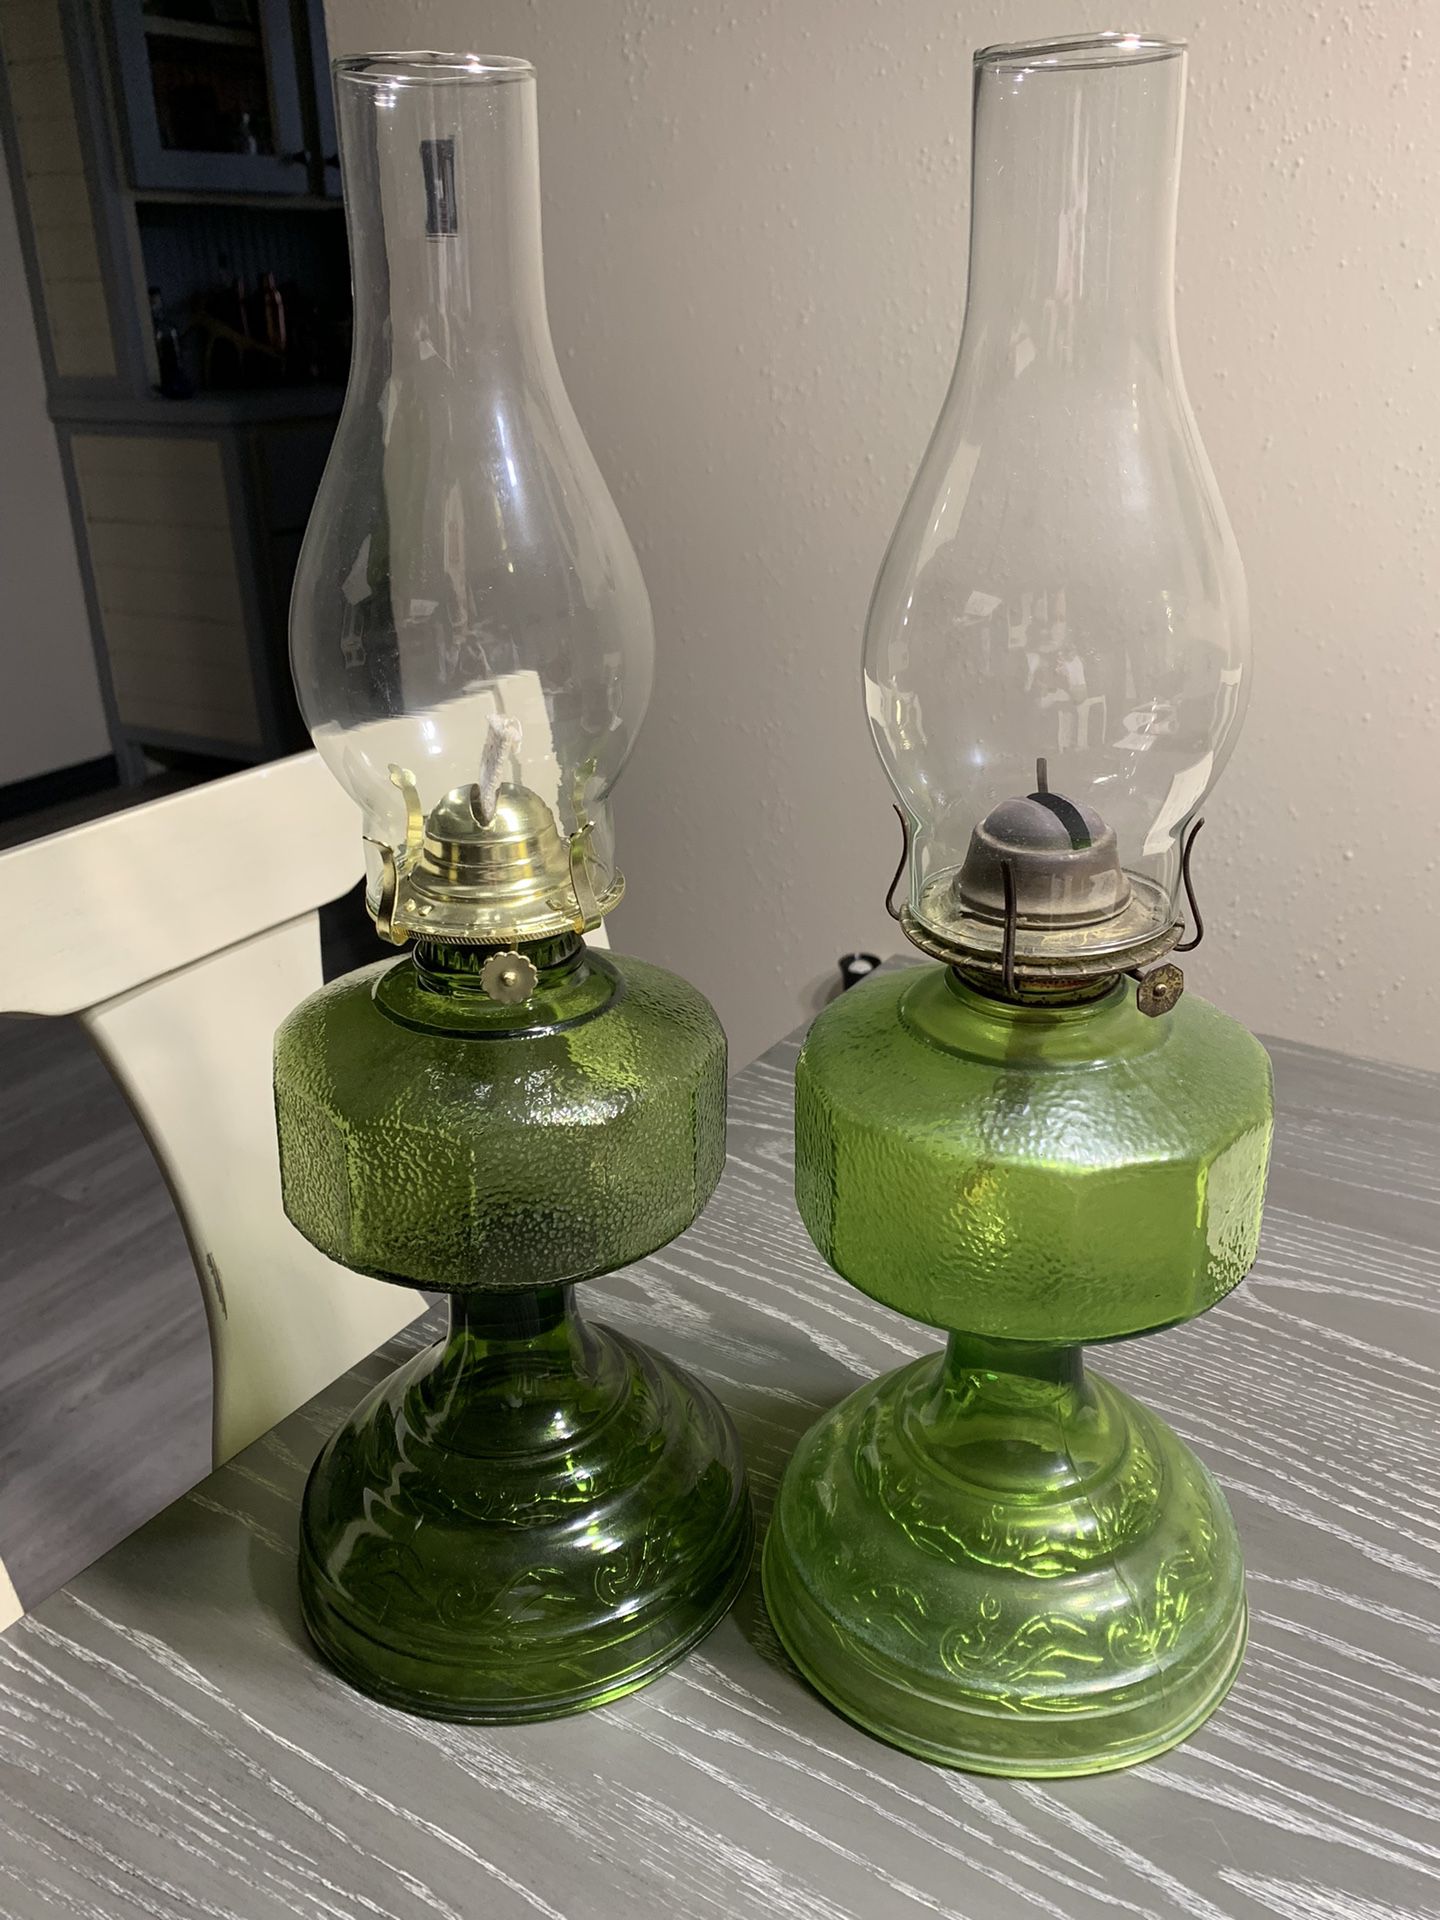 Old Green Kerosene Lamps